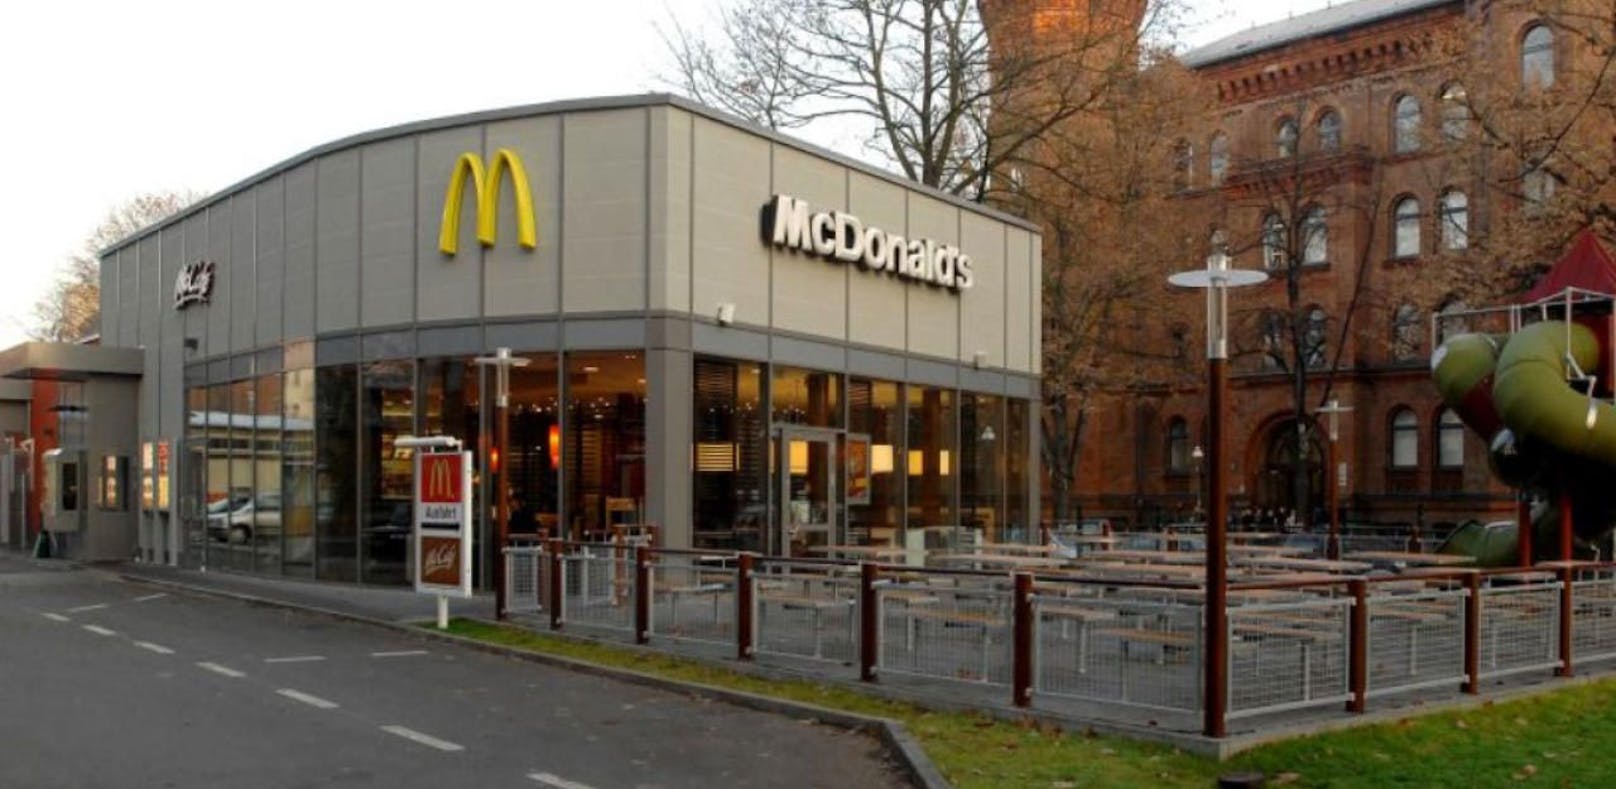 In dieser McDonald's Filiale in der Wrangelstraße soll die Sprengvorrichtung entdeckt worden sein.